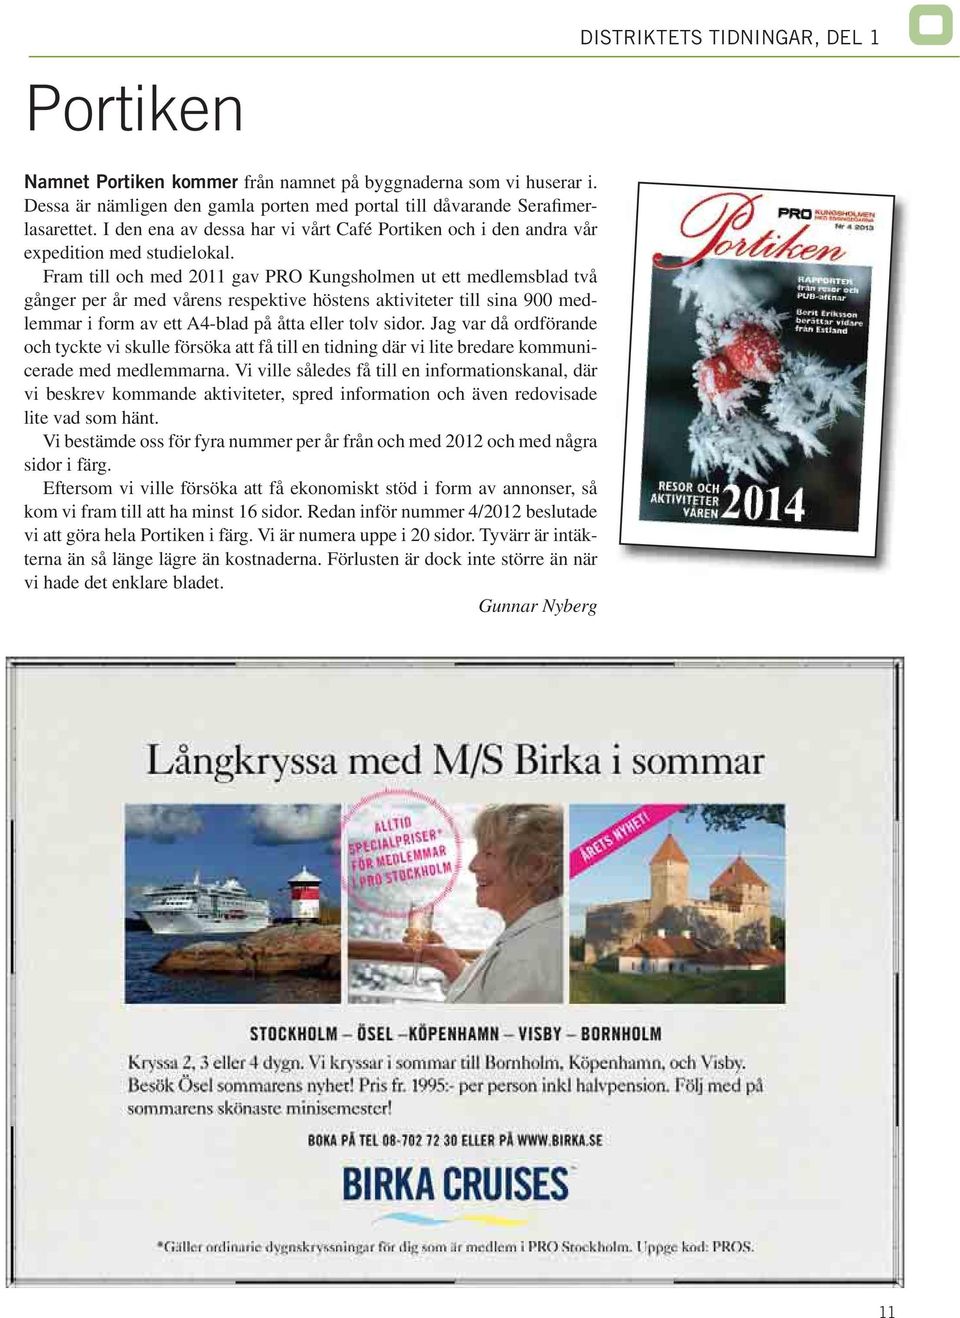 Fram till och med 2011 gav PRO Kungsholmen ut ett medlemsblad två gånger per år med vårens respektive höstens aktiviteter till sina 900 medlemmar i form av ett A4-blad på åtta eller tolv sidor.